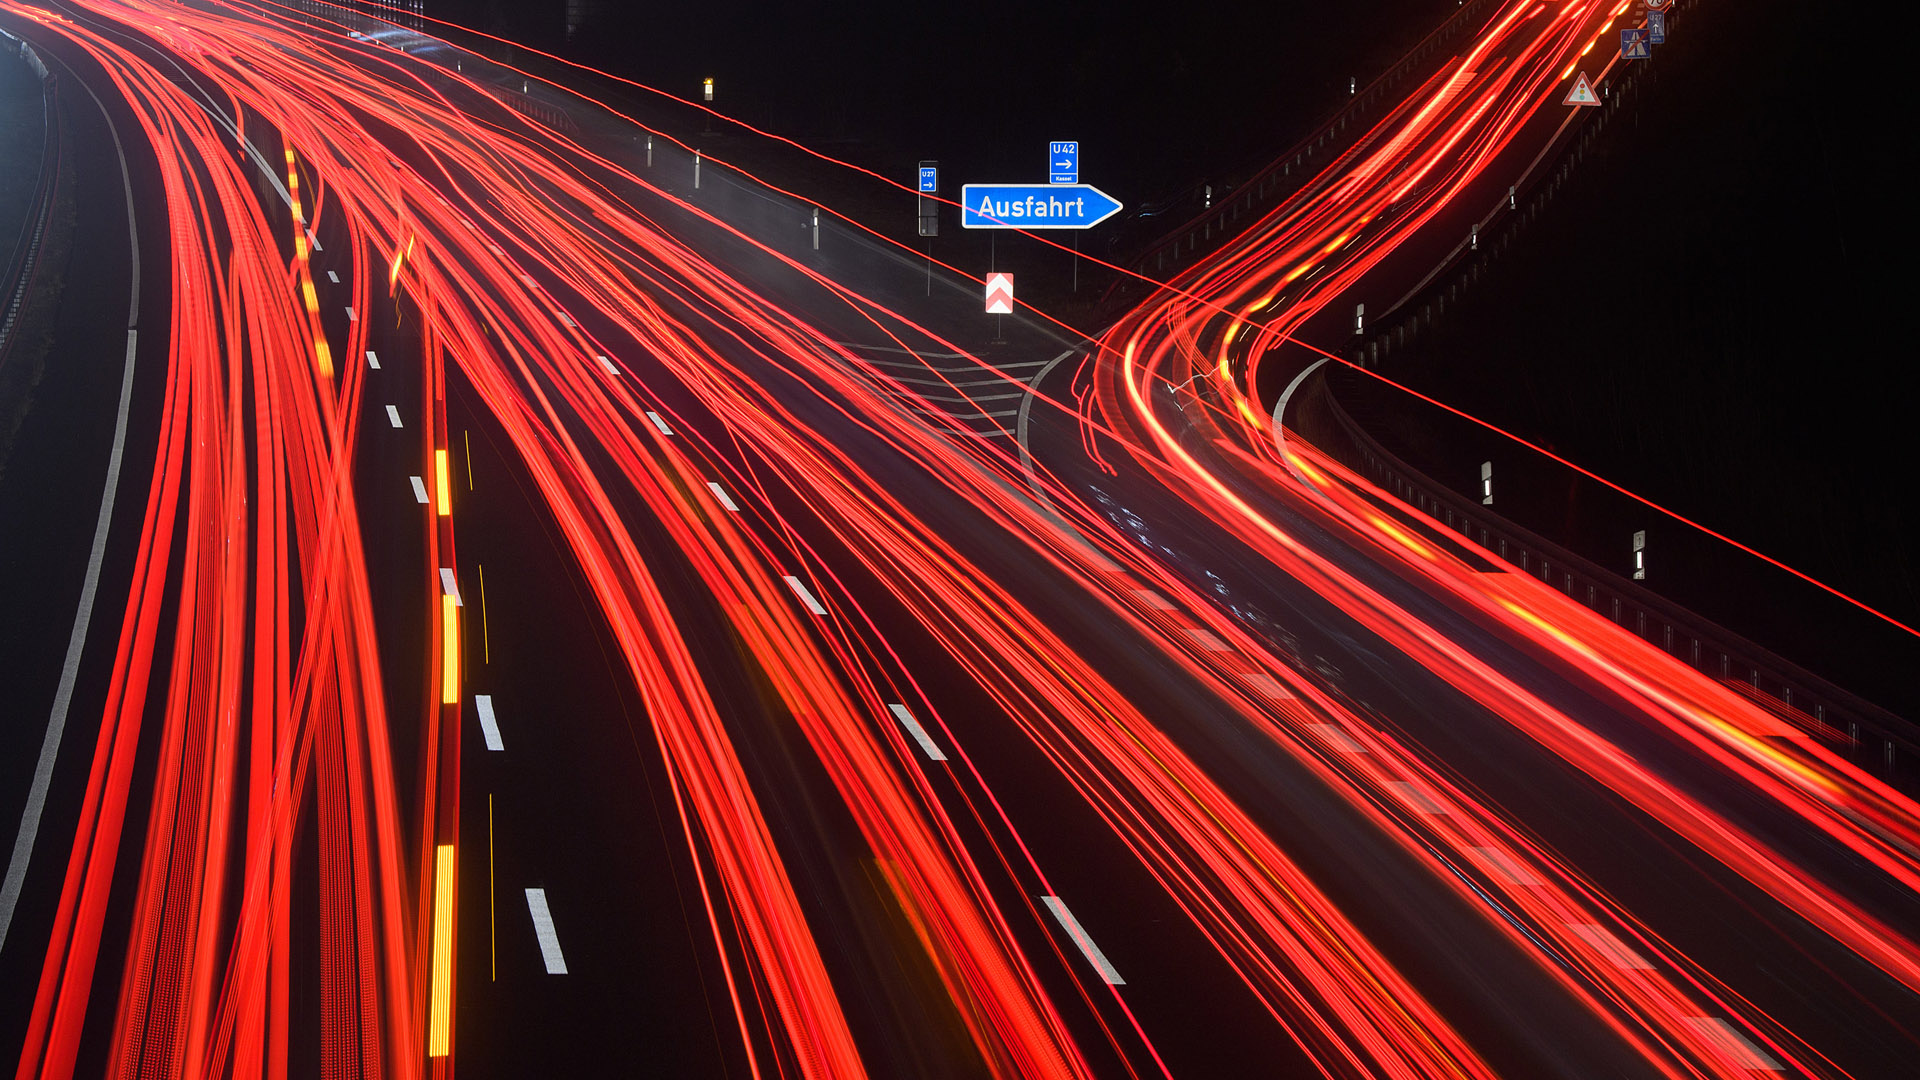 Fahrzeuge bei Nacht auf einer Autobahn in einer Langzeitbelichtung | dpa